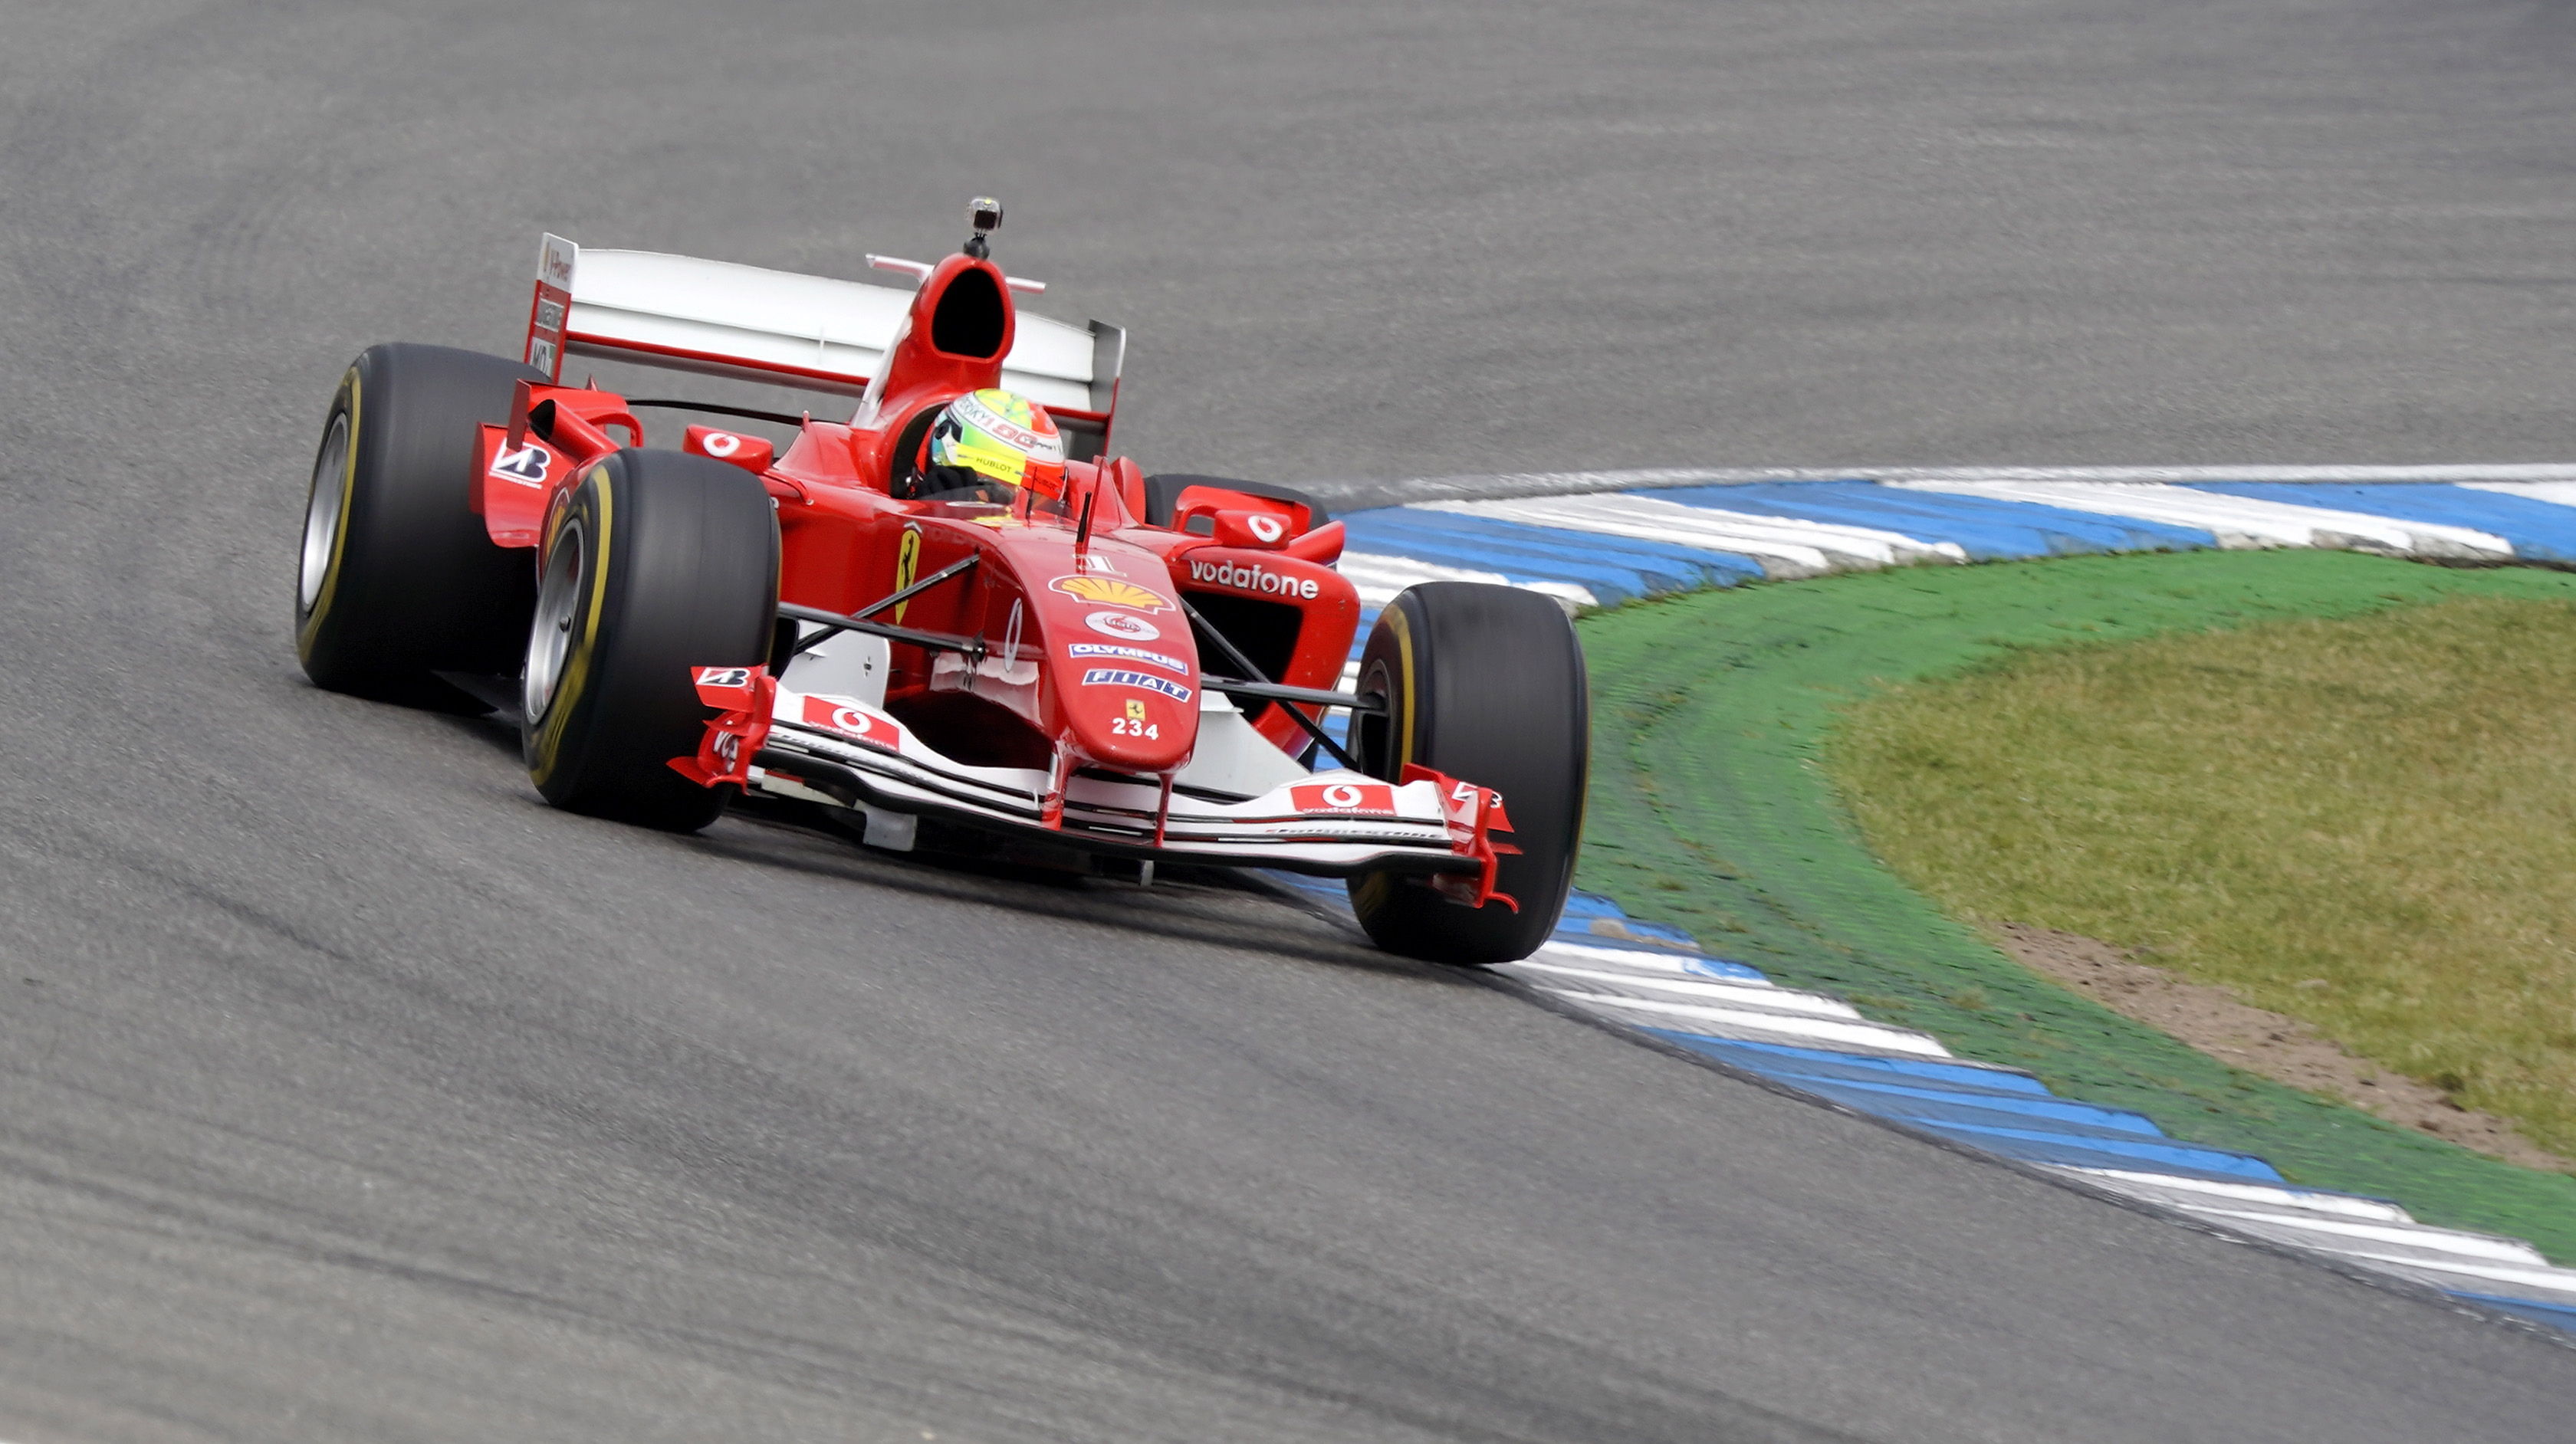 EN VIDEO: Mick Schumacher rodó en Hockenheim con el Ferrari del séptimo título de su padre